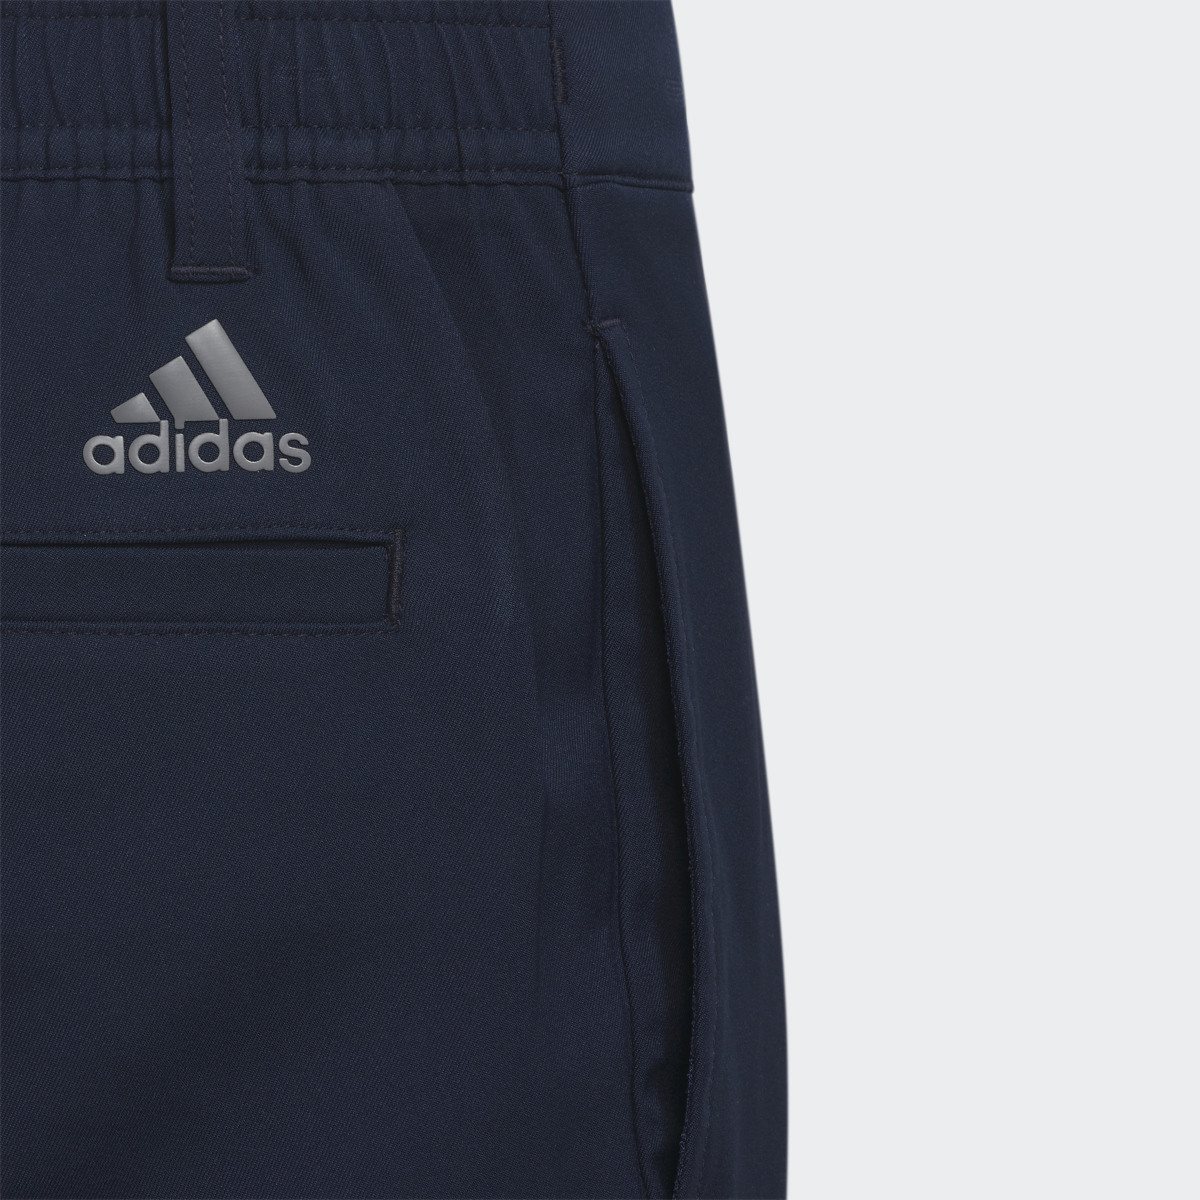 Adidas Ultimate365 Adjustable Golf Pants. 4